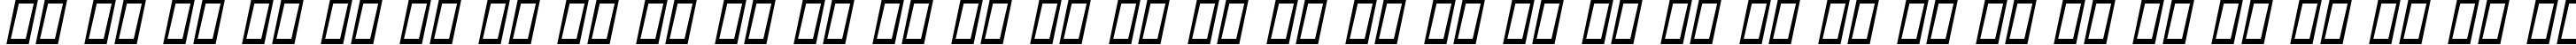 Пример написания русского алфавита шрифтом Aunchanted Bold Oblique